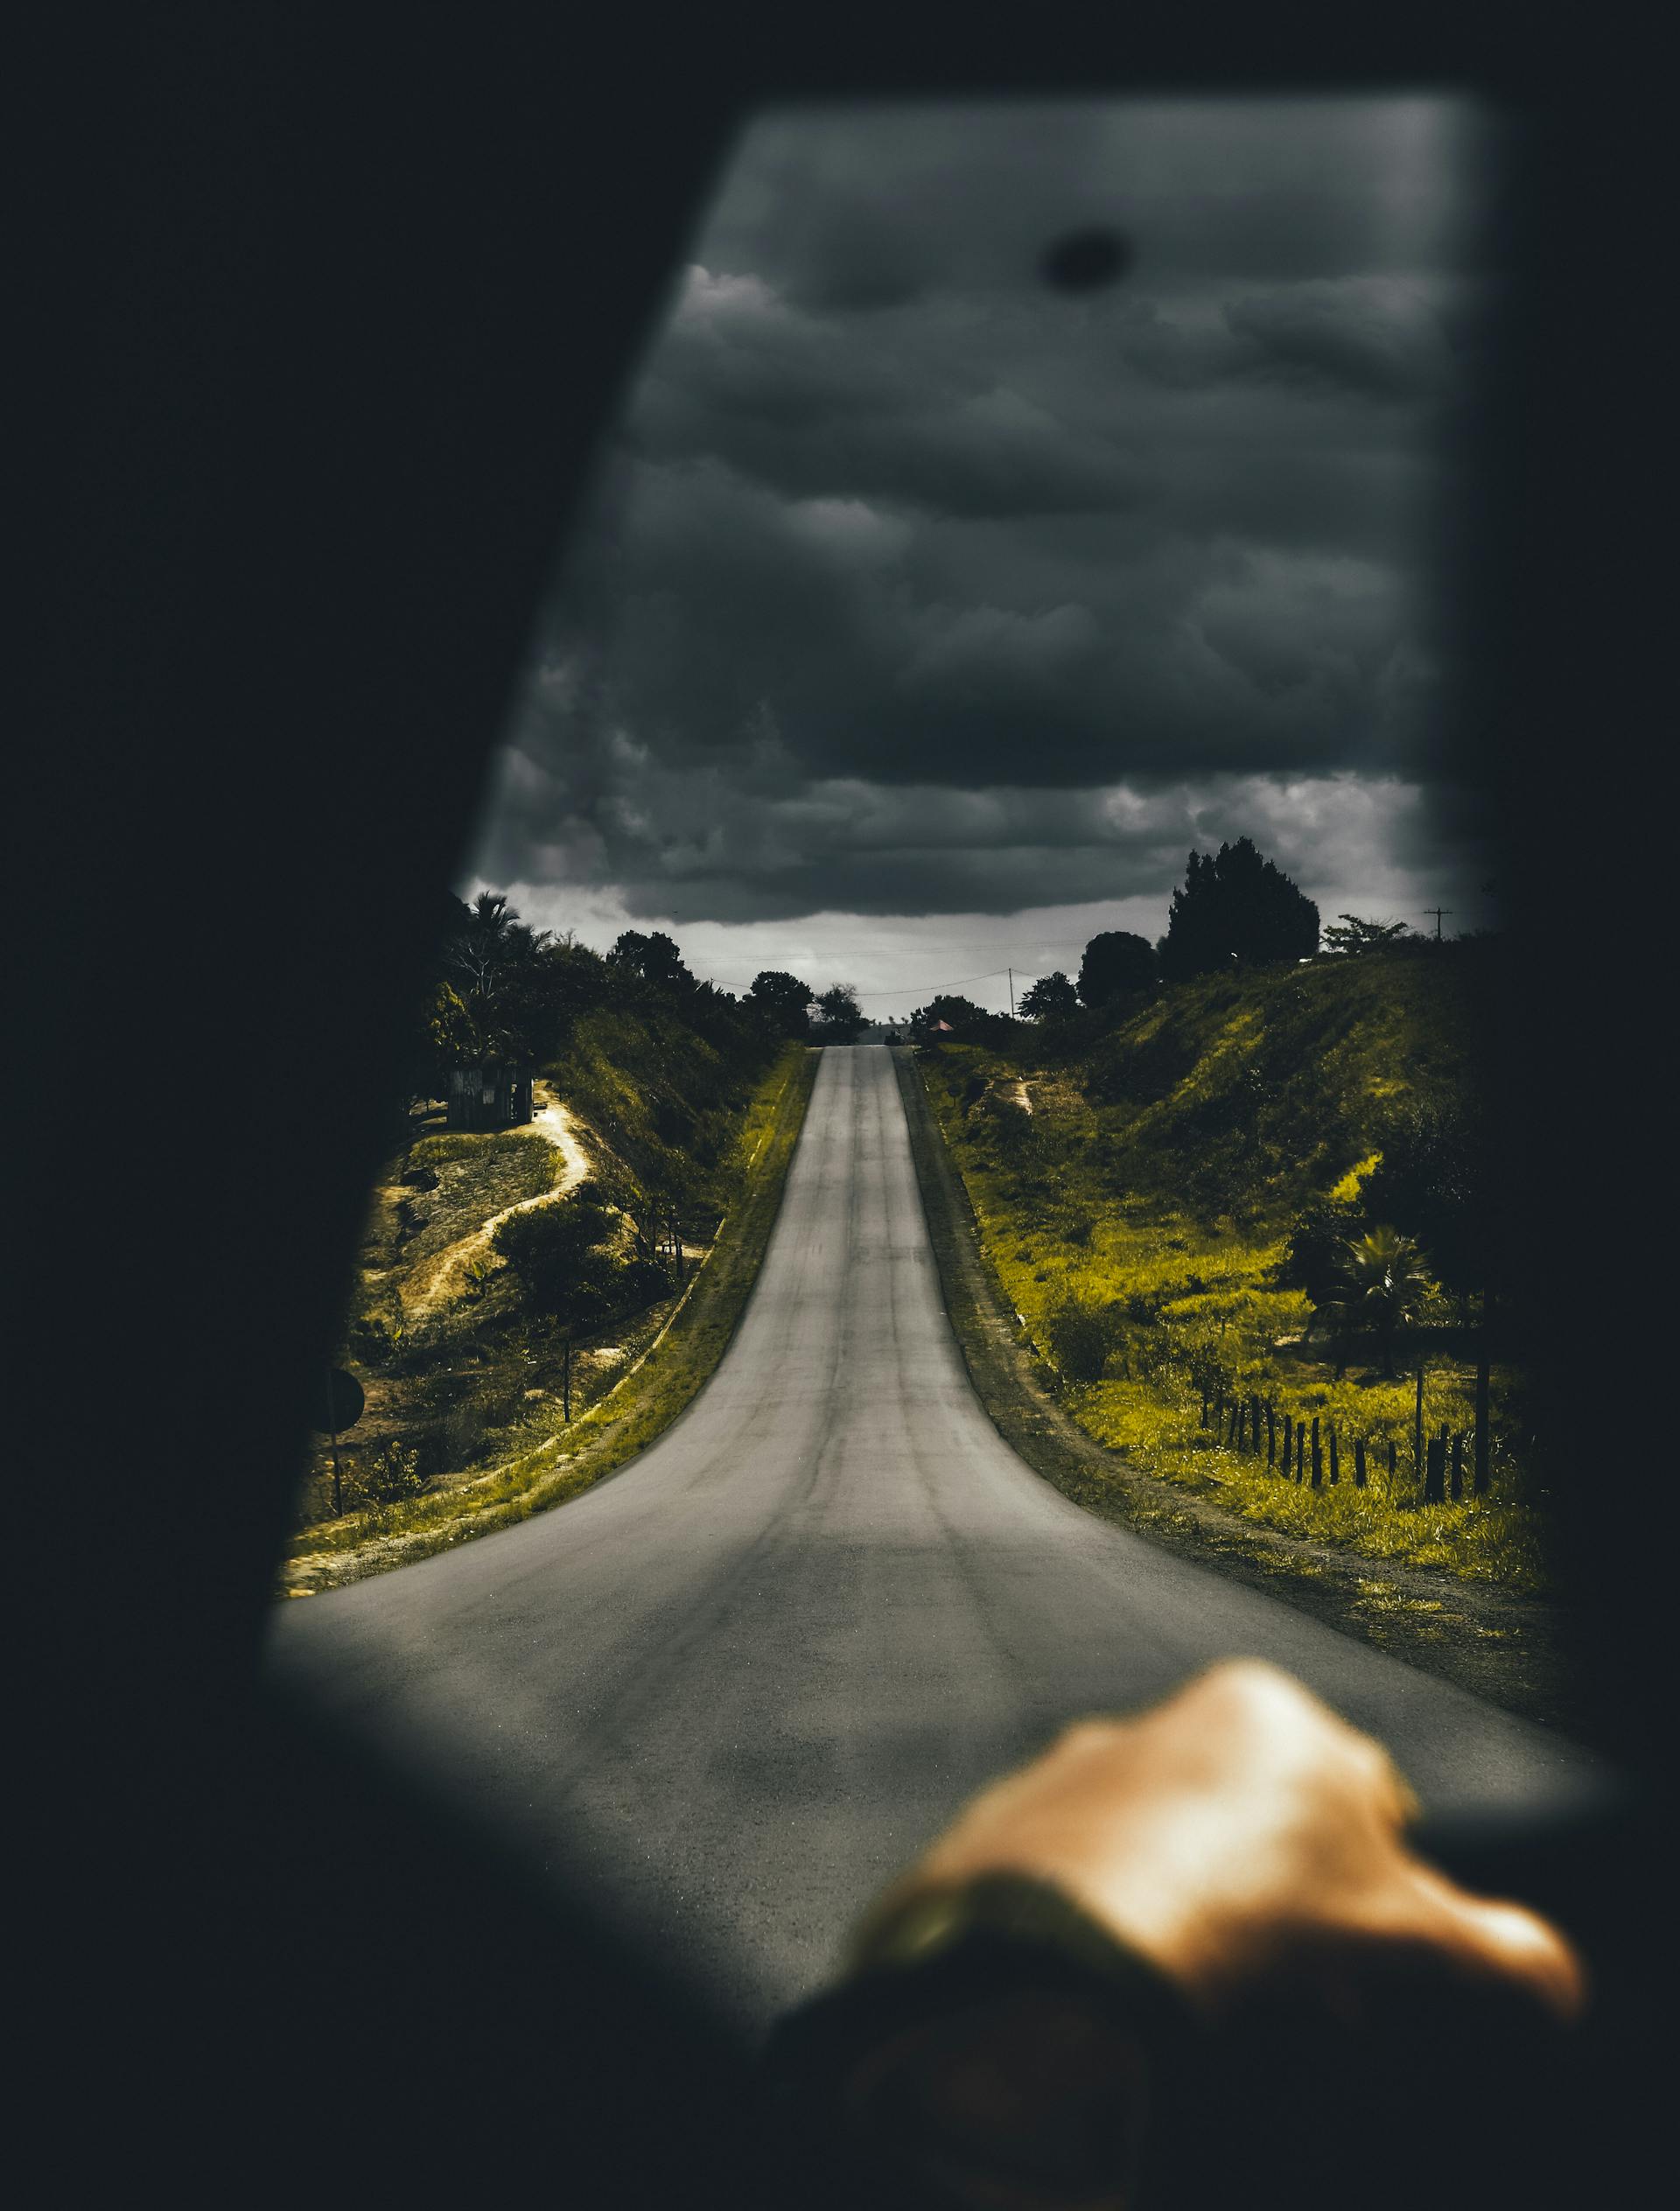 Une personne conduisant sur une route isolée | Source : Pexels